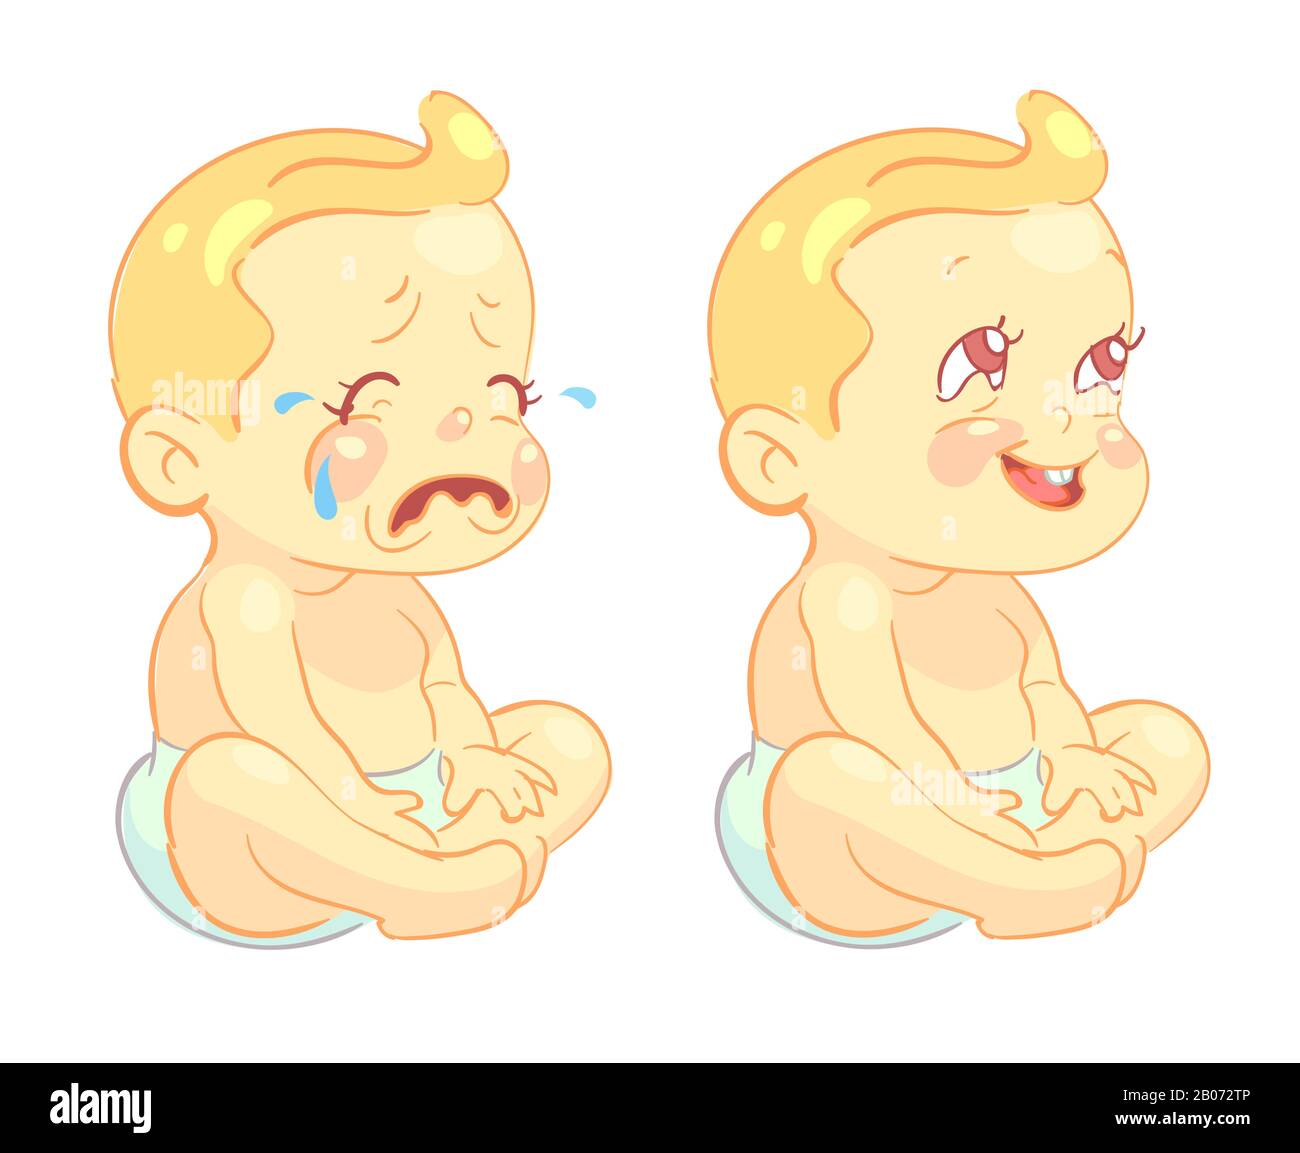 Lächelndes Kleinkind und weinende Babyvektor-Zeichen. Säugling mit fröhlicher Stimmung und neugeborener weinender Illustration Stock Vektor